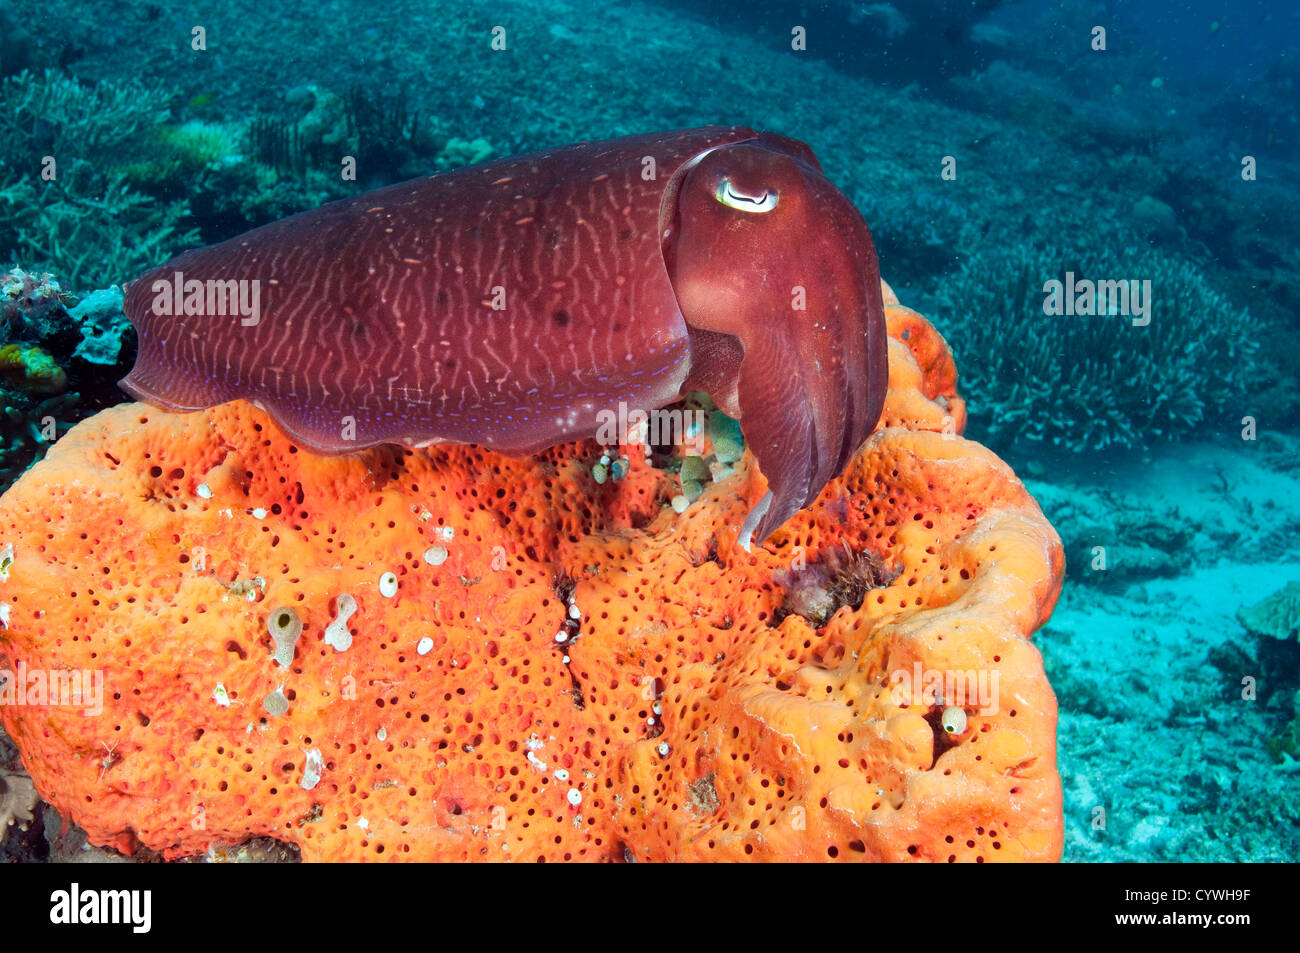 Cuttlefish, Sepia latimanus, Komodo Indonesia. Stock Photo